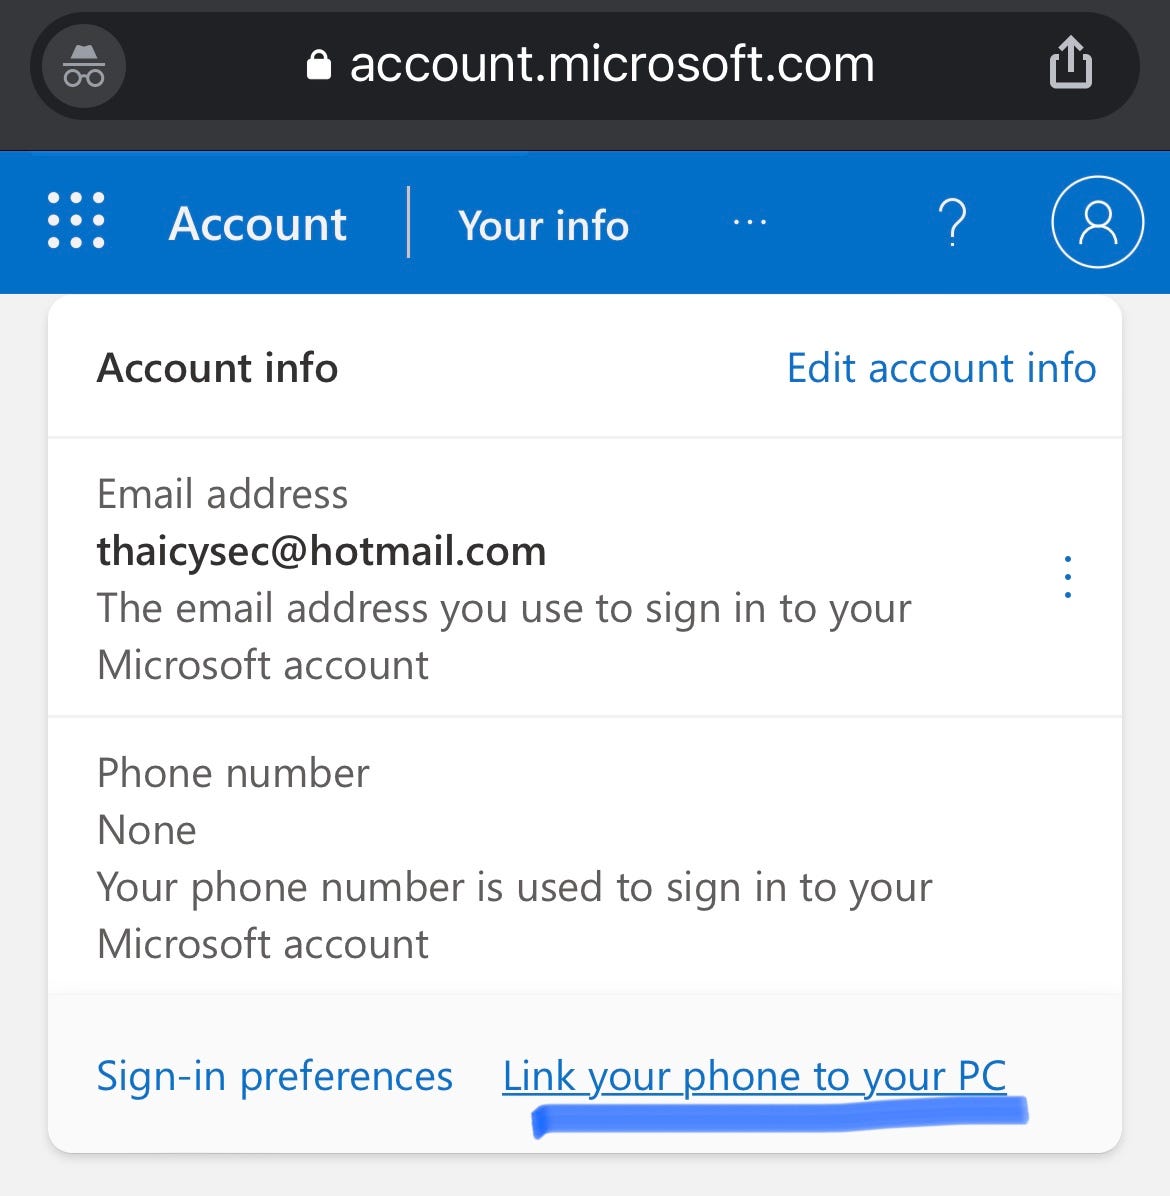 วิธีตั้งค่าล็อกอินอีเมล Hotmail/Outlook ส่วนตัวแบบไม่ต้องใช้รหัสผ่าน  แบบทำผ่านมือถือได้! | By Thaicysec | Medium